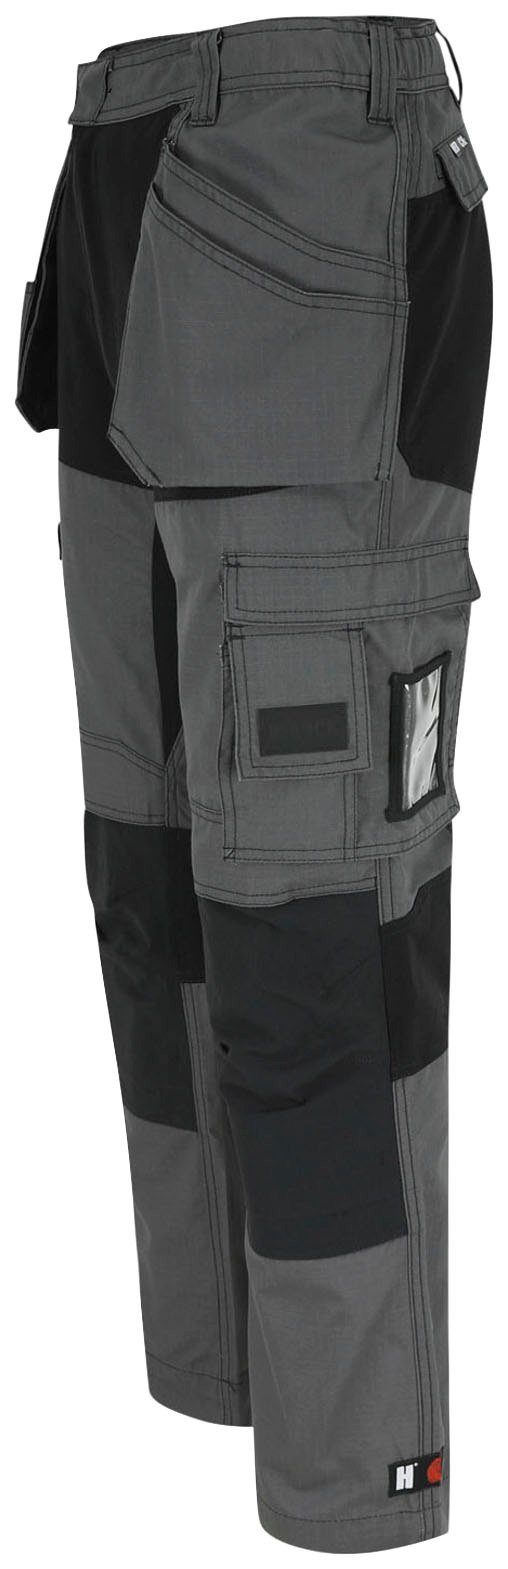 Herock Arbeitshose Spector Hose Multi-Pocket-Hose festen mit grau-schwarz Nageltaschen und 2 4-Wege-Stretch-Teilen